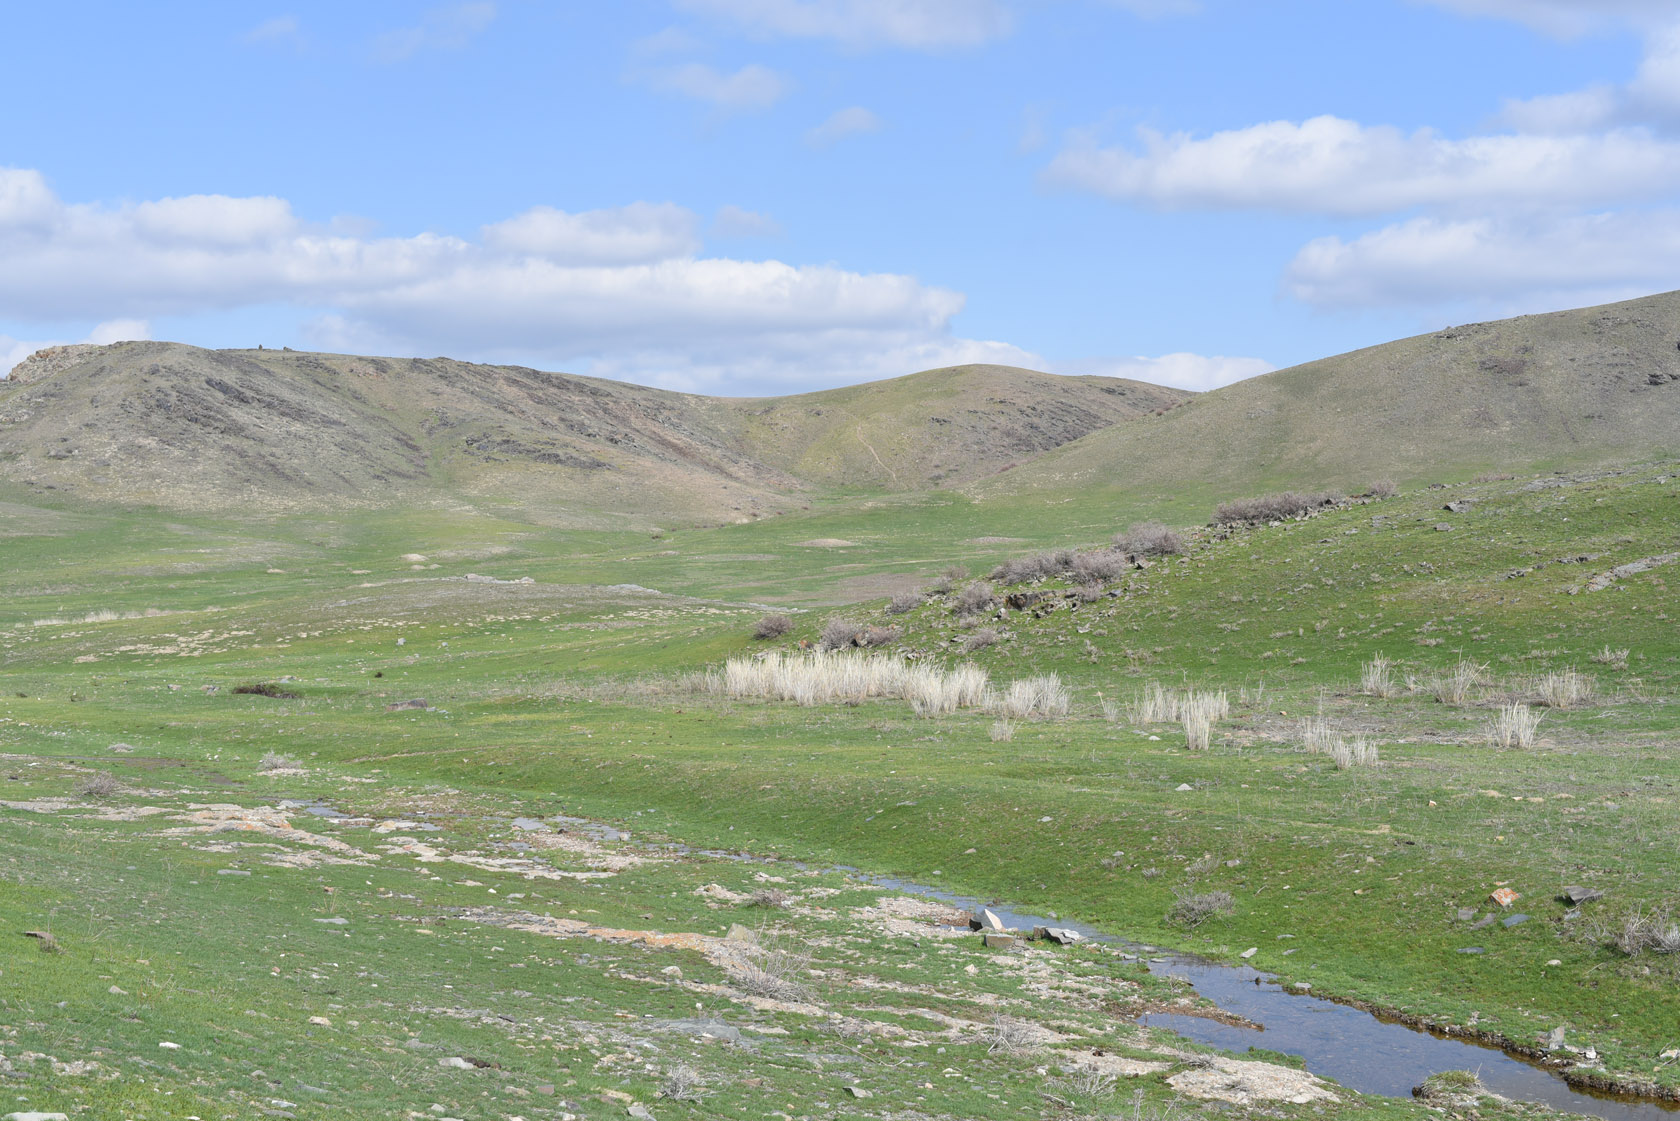 Тамгалы (Танбалы), image of landscape/habitat.